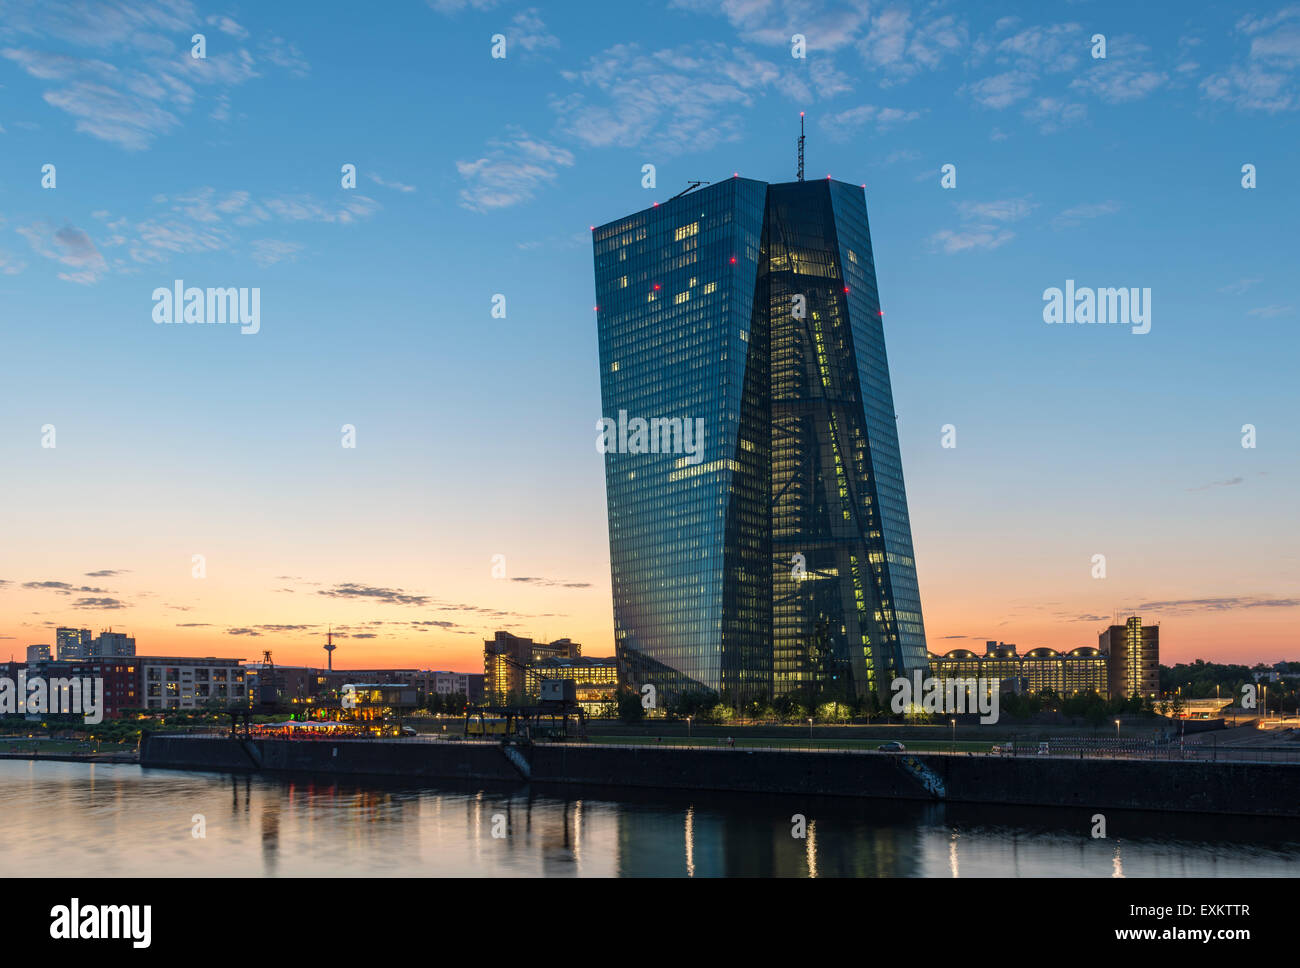 La nouvelle Banque centrale européenne, BCE, au coucher du soleil, Frankfurt am Main, Hesse, Allemagne Banque D'Images